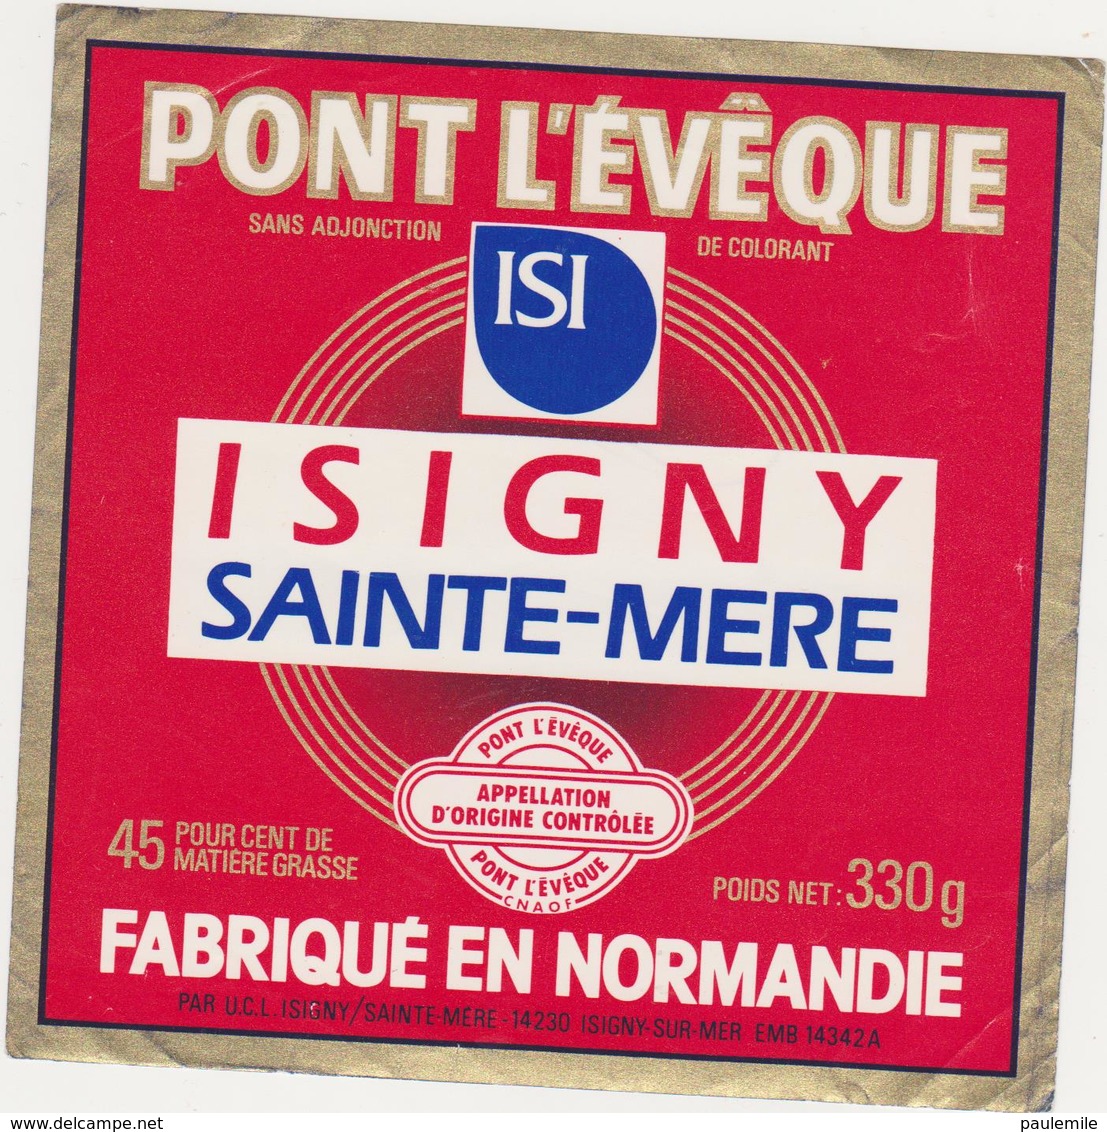 ETIQUETTE DE PONT L'EVEQUE  ISIGNY STE MERE - Fromage